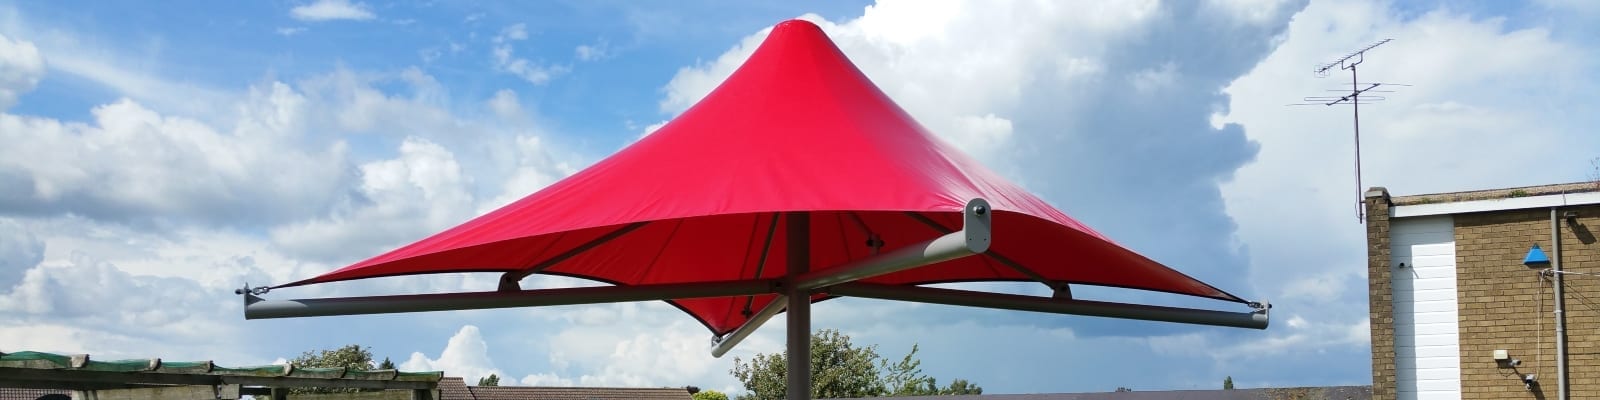 Someries Junior School Umbrella Canopy